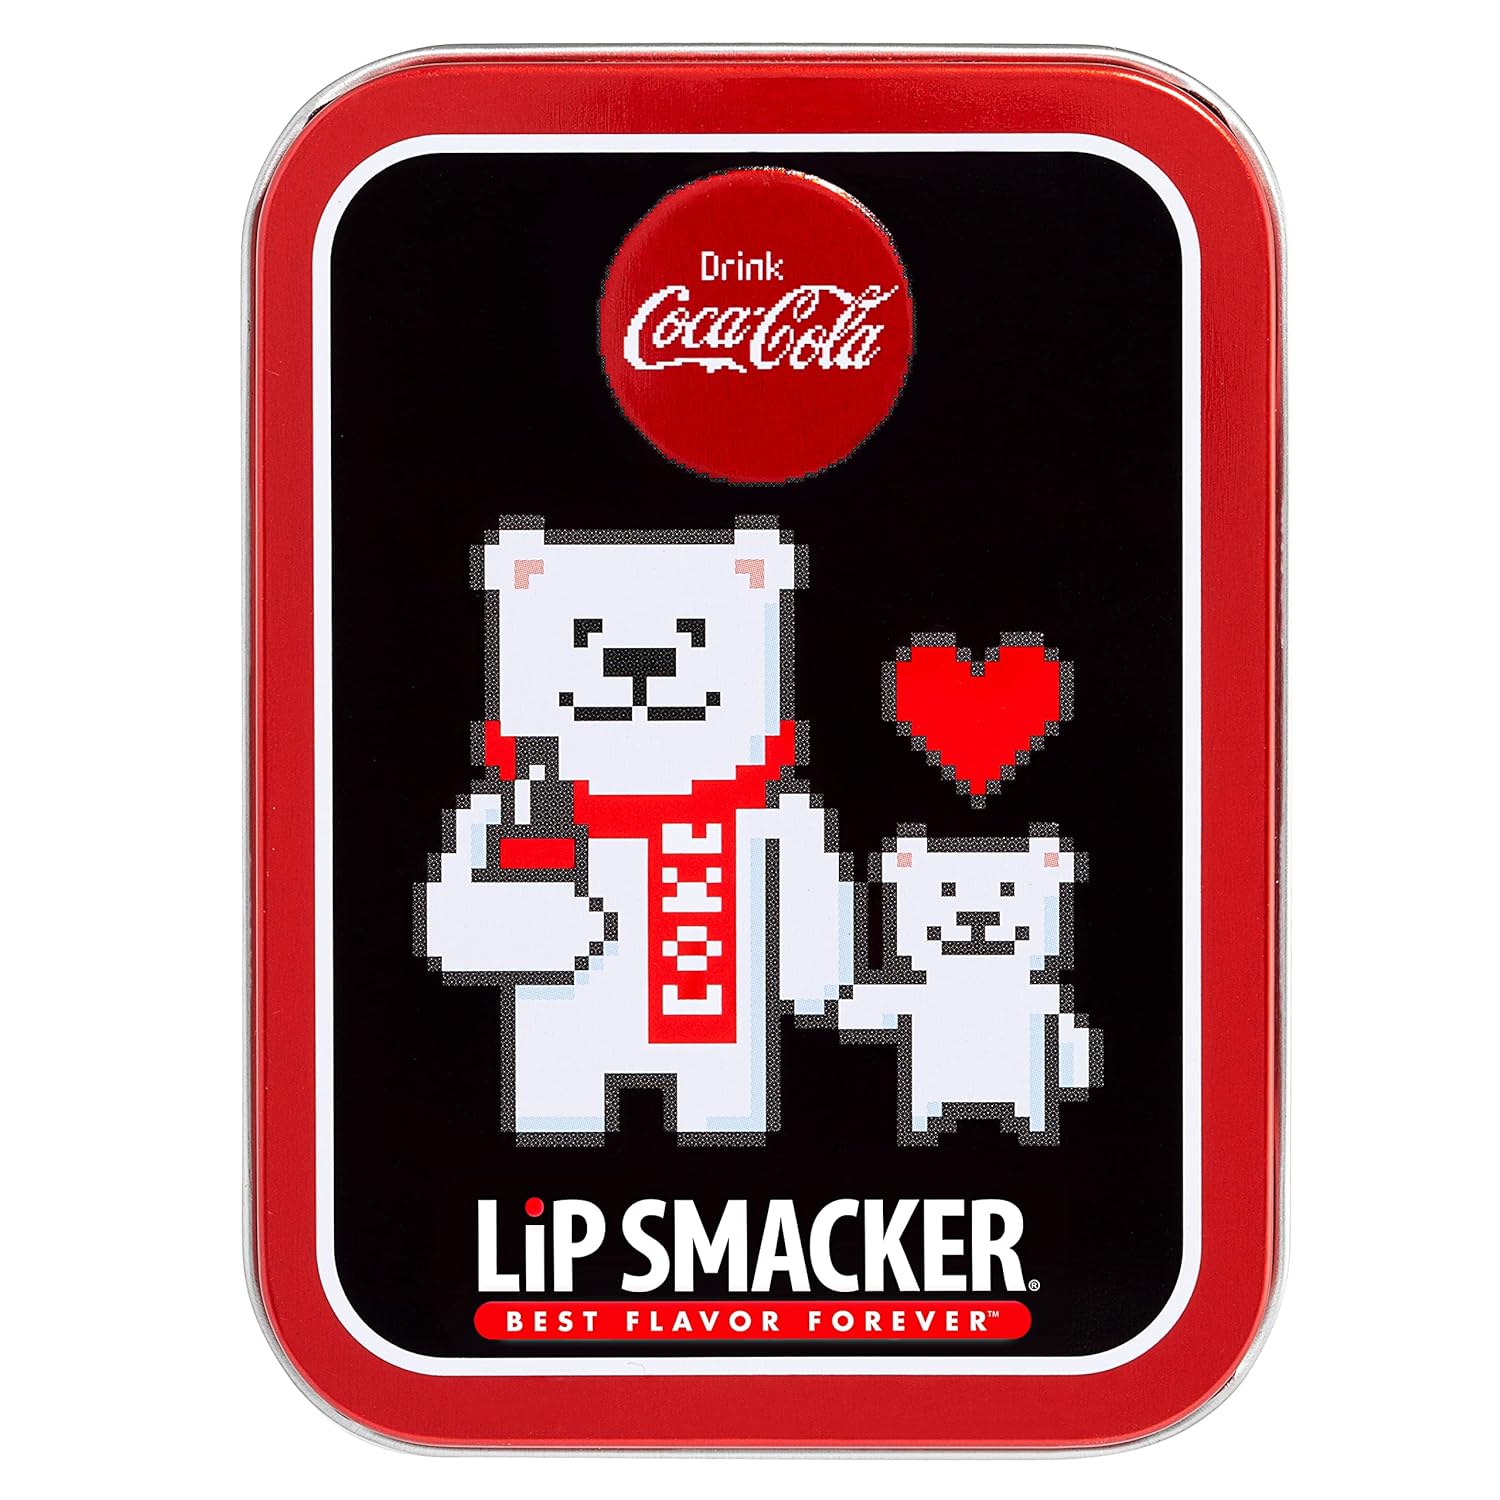 Lip Smacker Coca Cola Collection, lip balm made for kids - Cherry Coke, Coke, Vanilla Coke, trio : Beauty & Personal Care